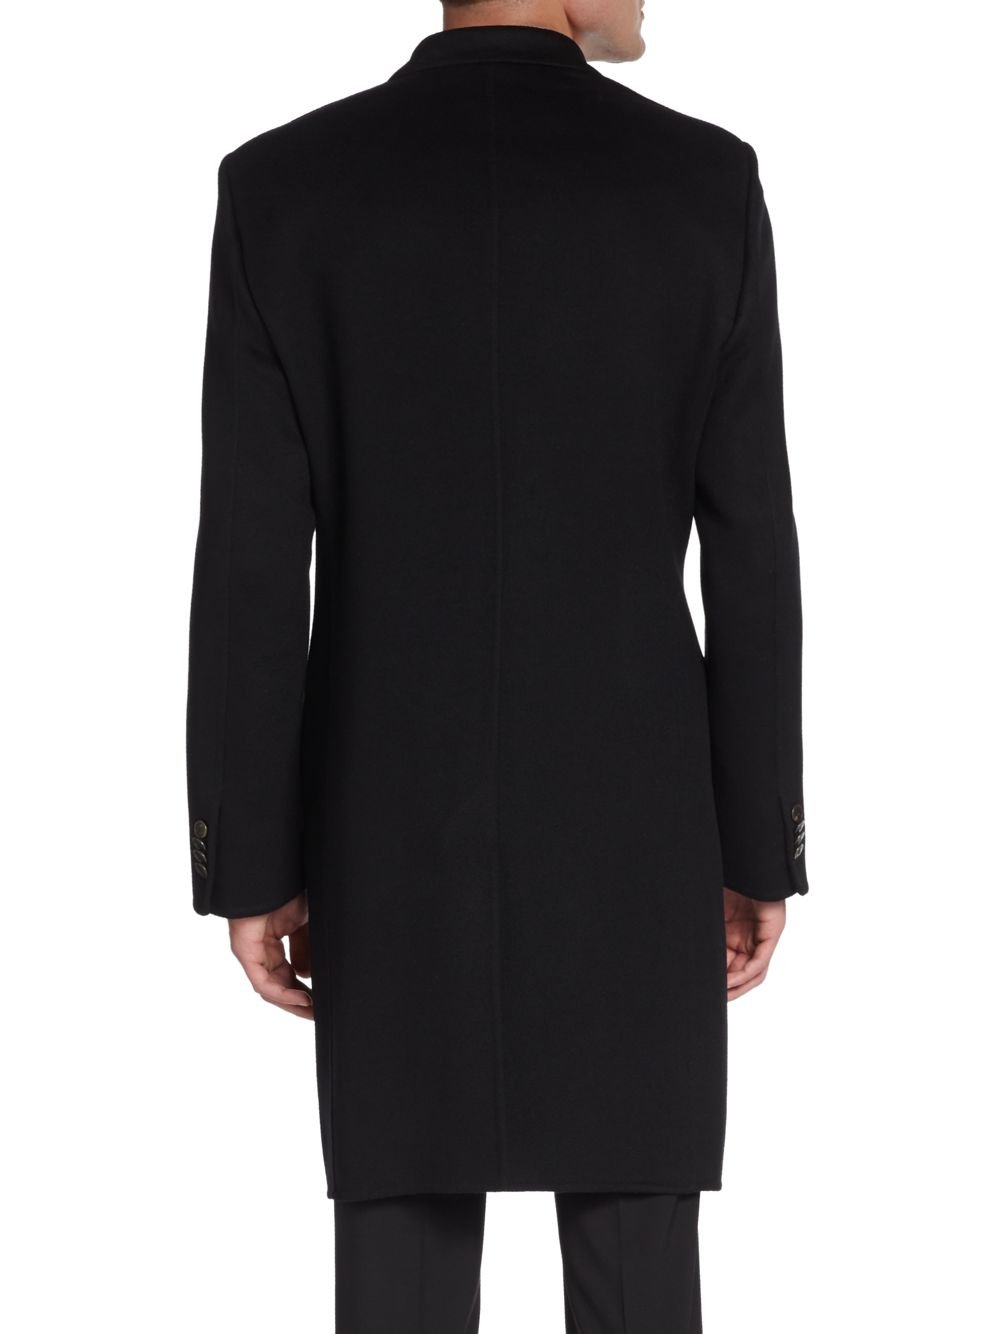 Giorgio Armani Cashmere Coat in Black for Men - Lyst